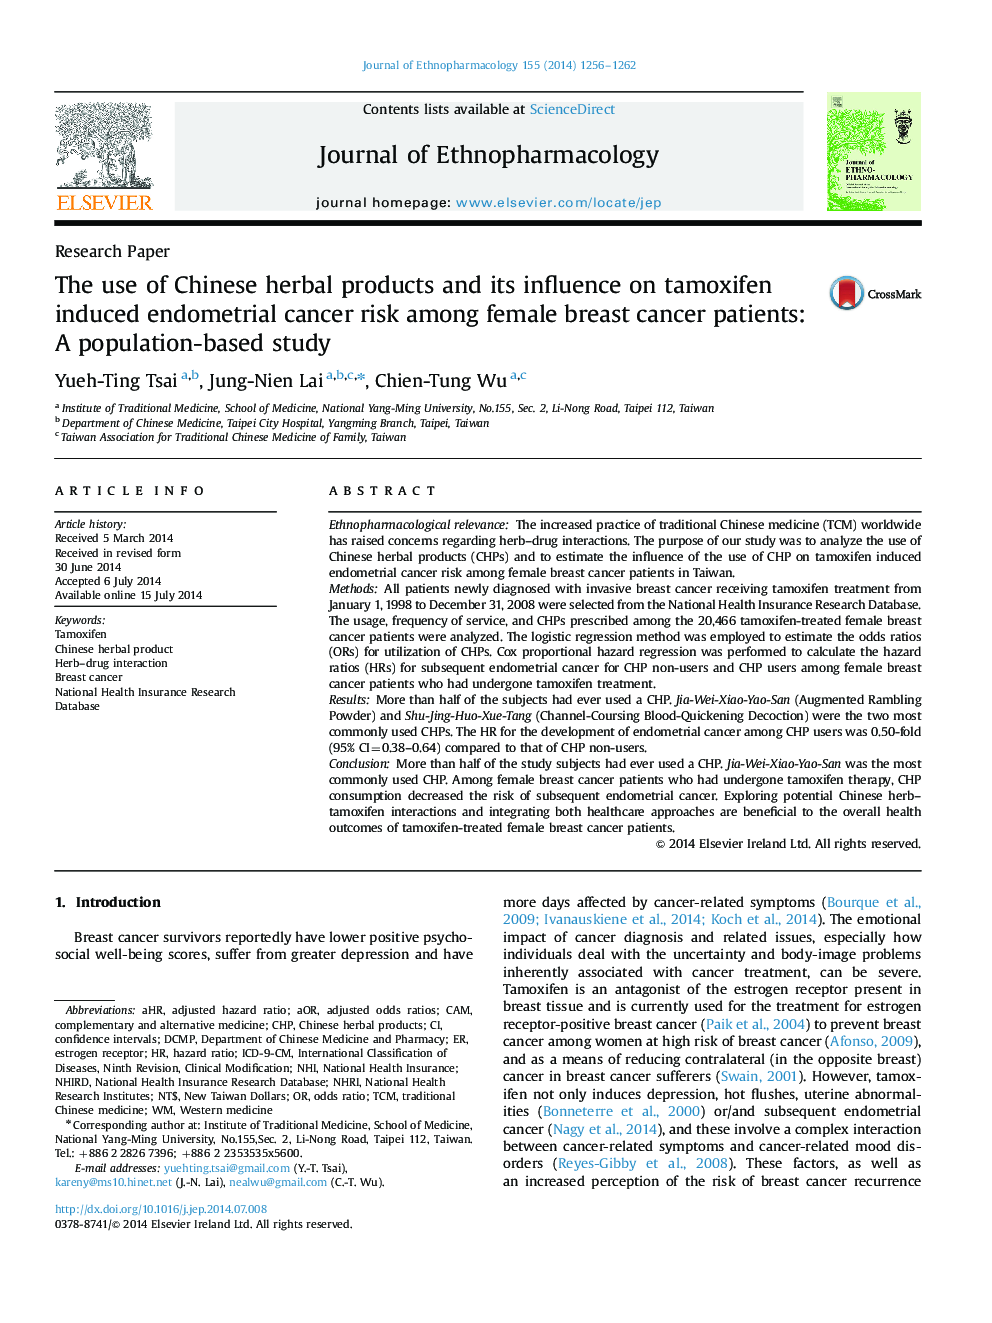 استفاده از محصولات گیاهی چینی و تأثیر آن بر تاموکسیفن باعث ایجاد خطر ابتلا به سرطان آندومتر در بیماران مبتلا به سرطان پستان می شود: یک مطالعه مبتنی بر جمعیت 